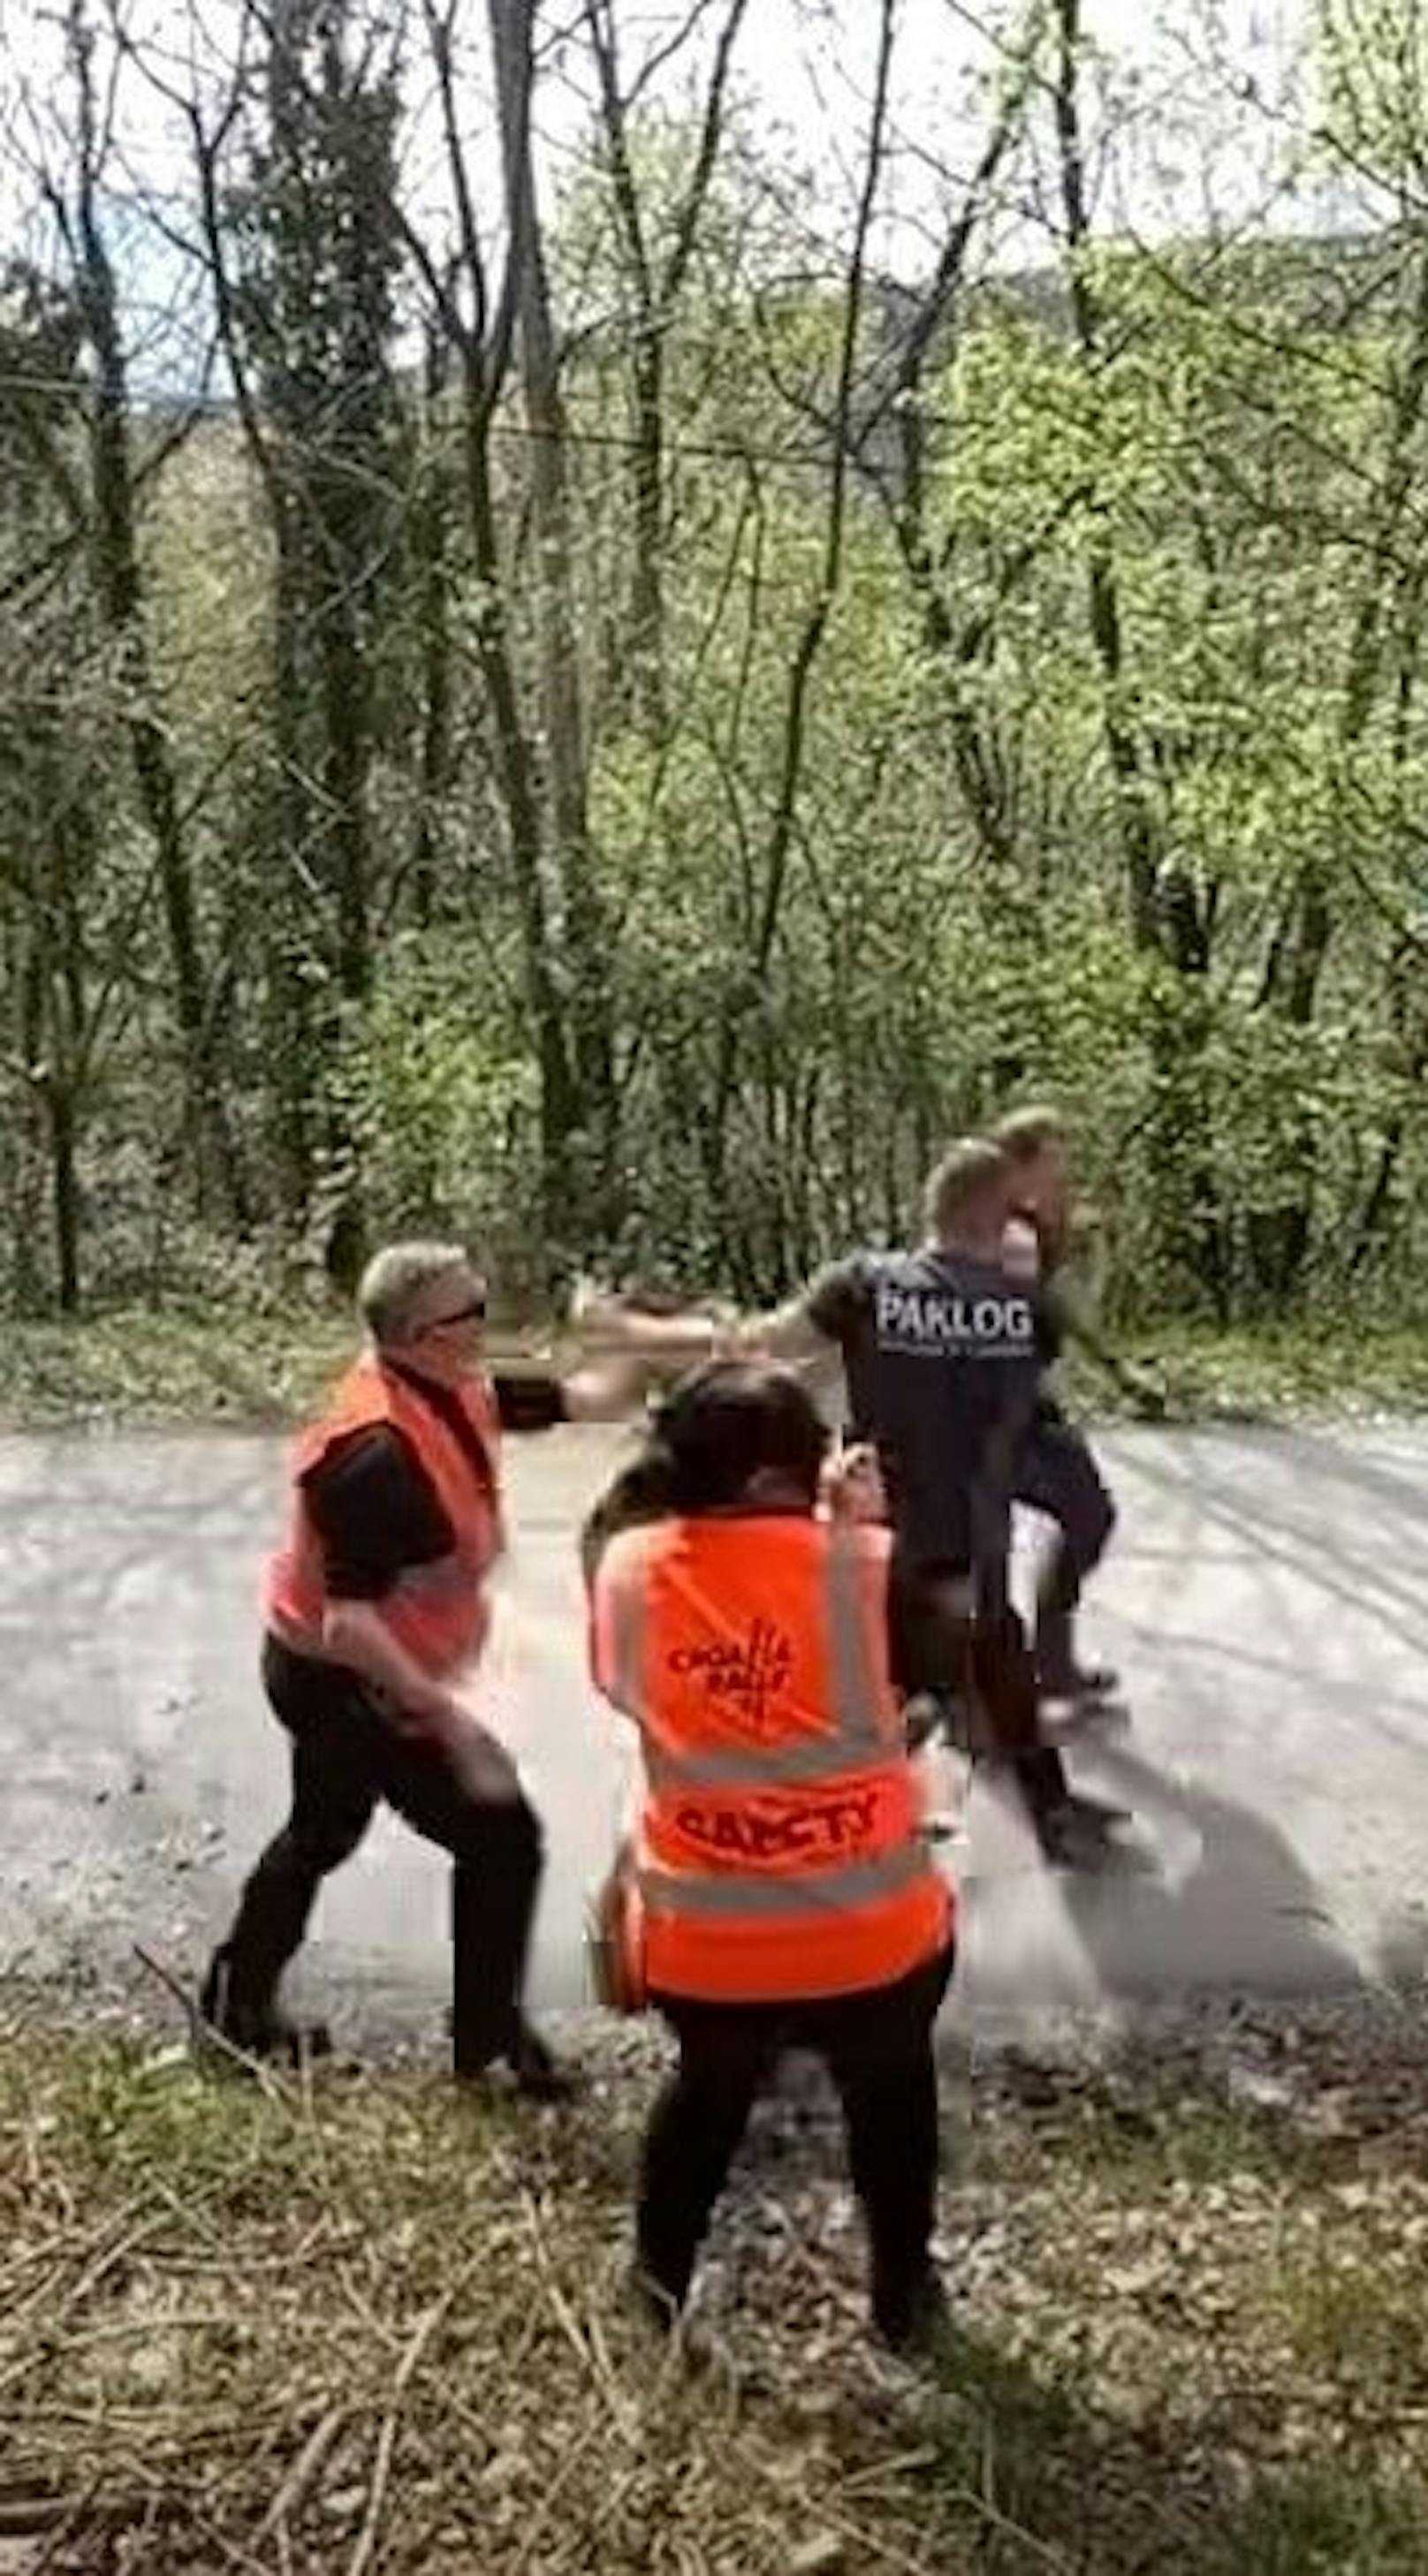 Ein Streit zwischen Fans eskalierte am Samstag bei der WRC Rallye komplett.